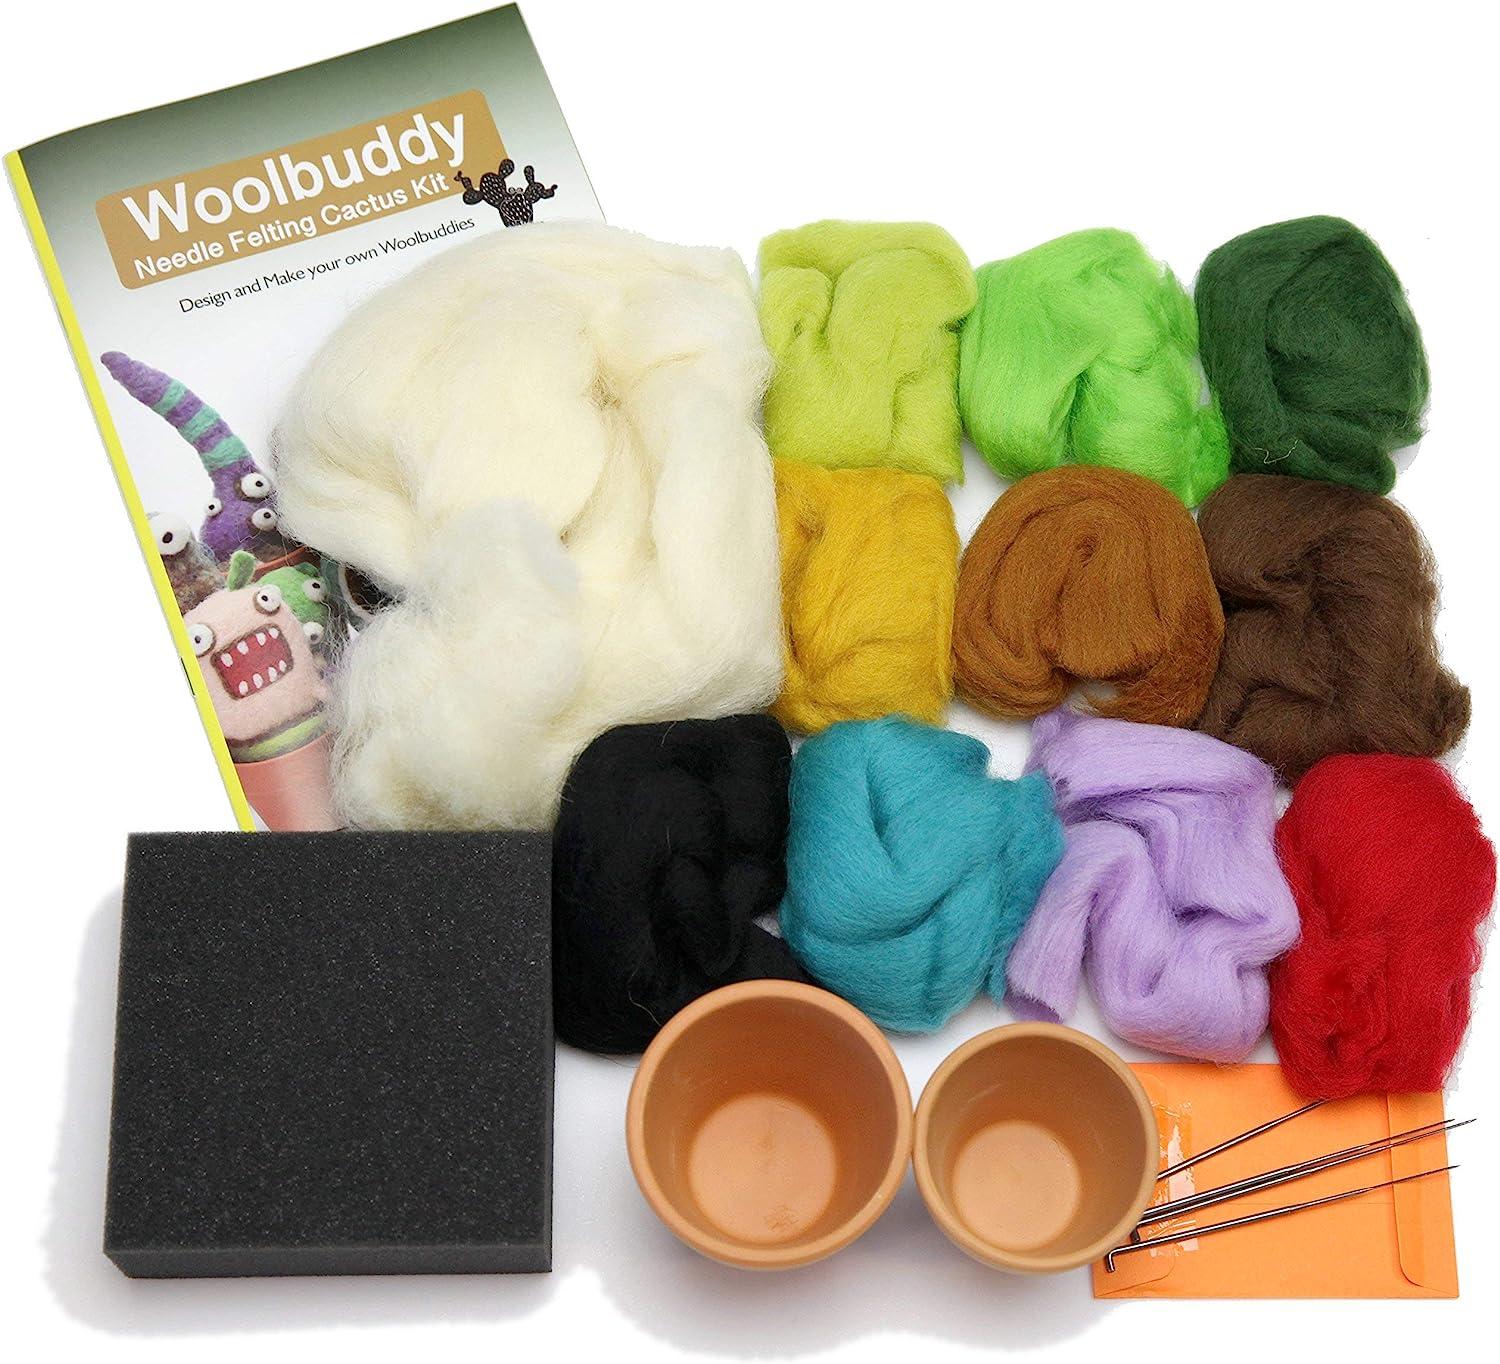 Woolbuddy Needle Felting Kit Cactus, Felting Kit for Beginner Adults  Includes 4 Felting Needles, Needle Felting Wool, Felting Foam Pad, 2 Clay  Pots and Photo Instructions, DIY Crafts